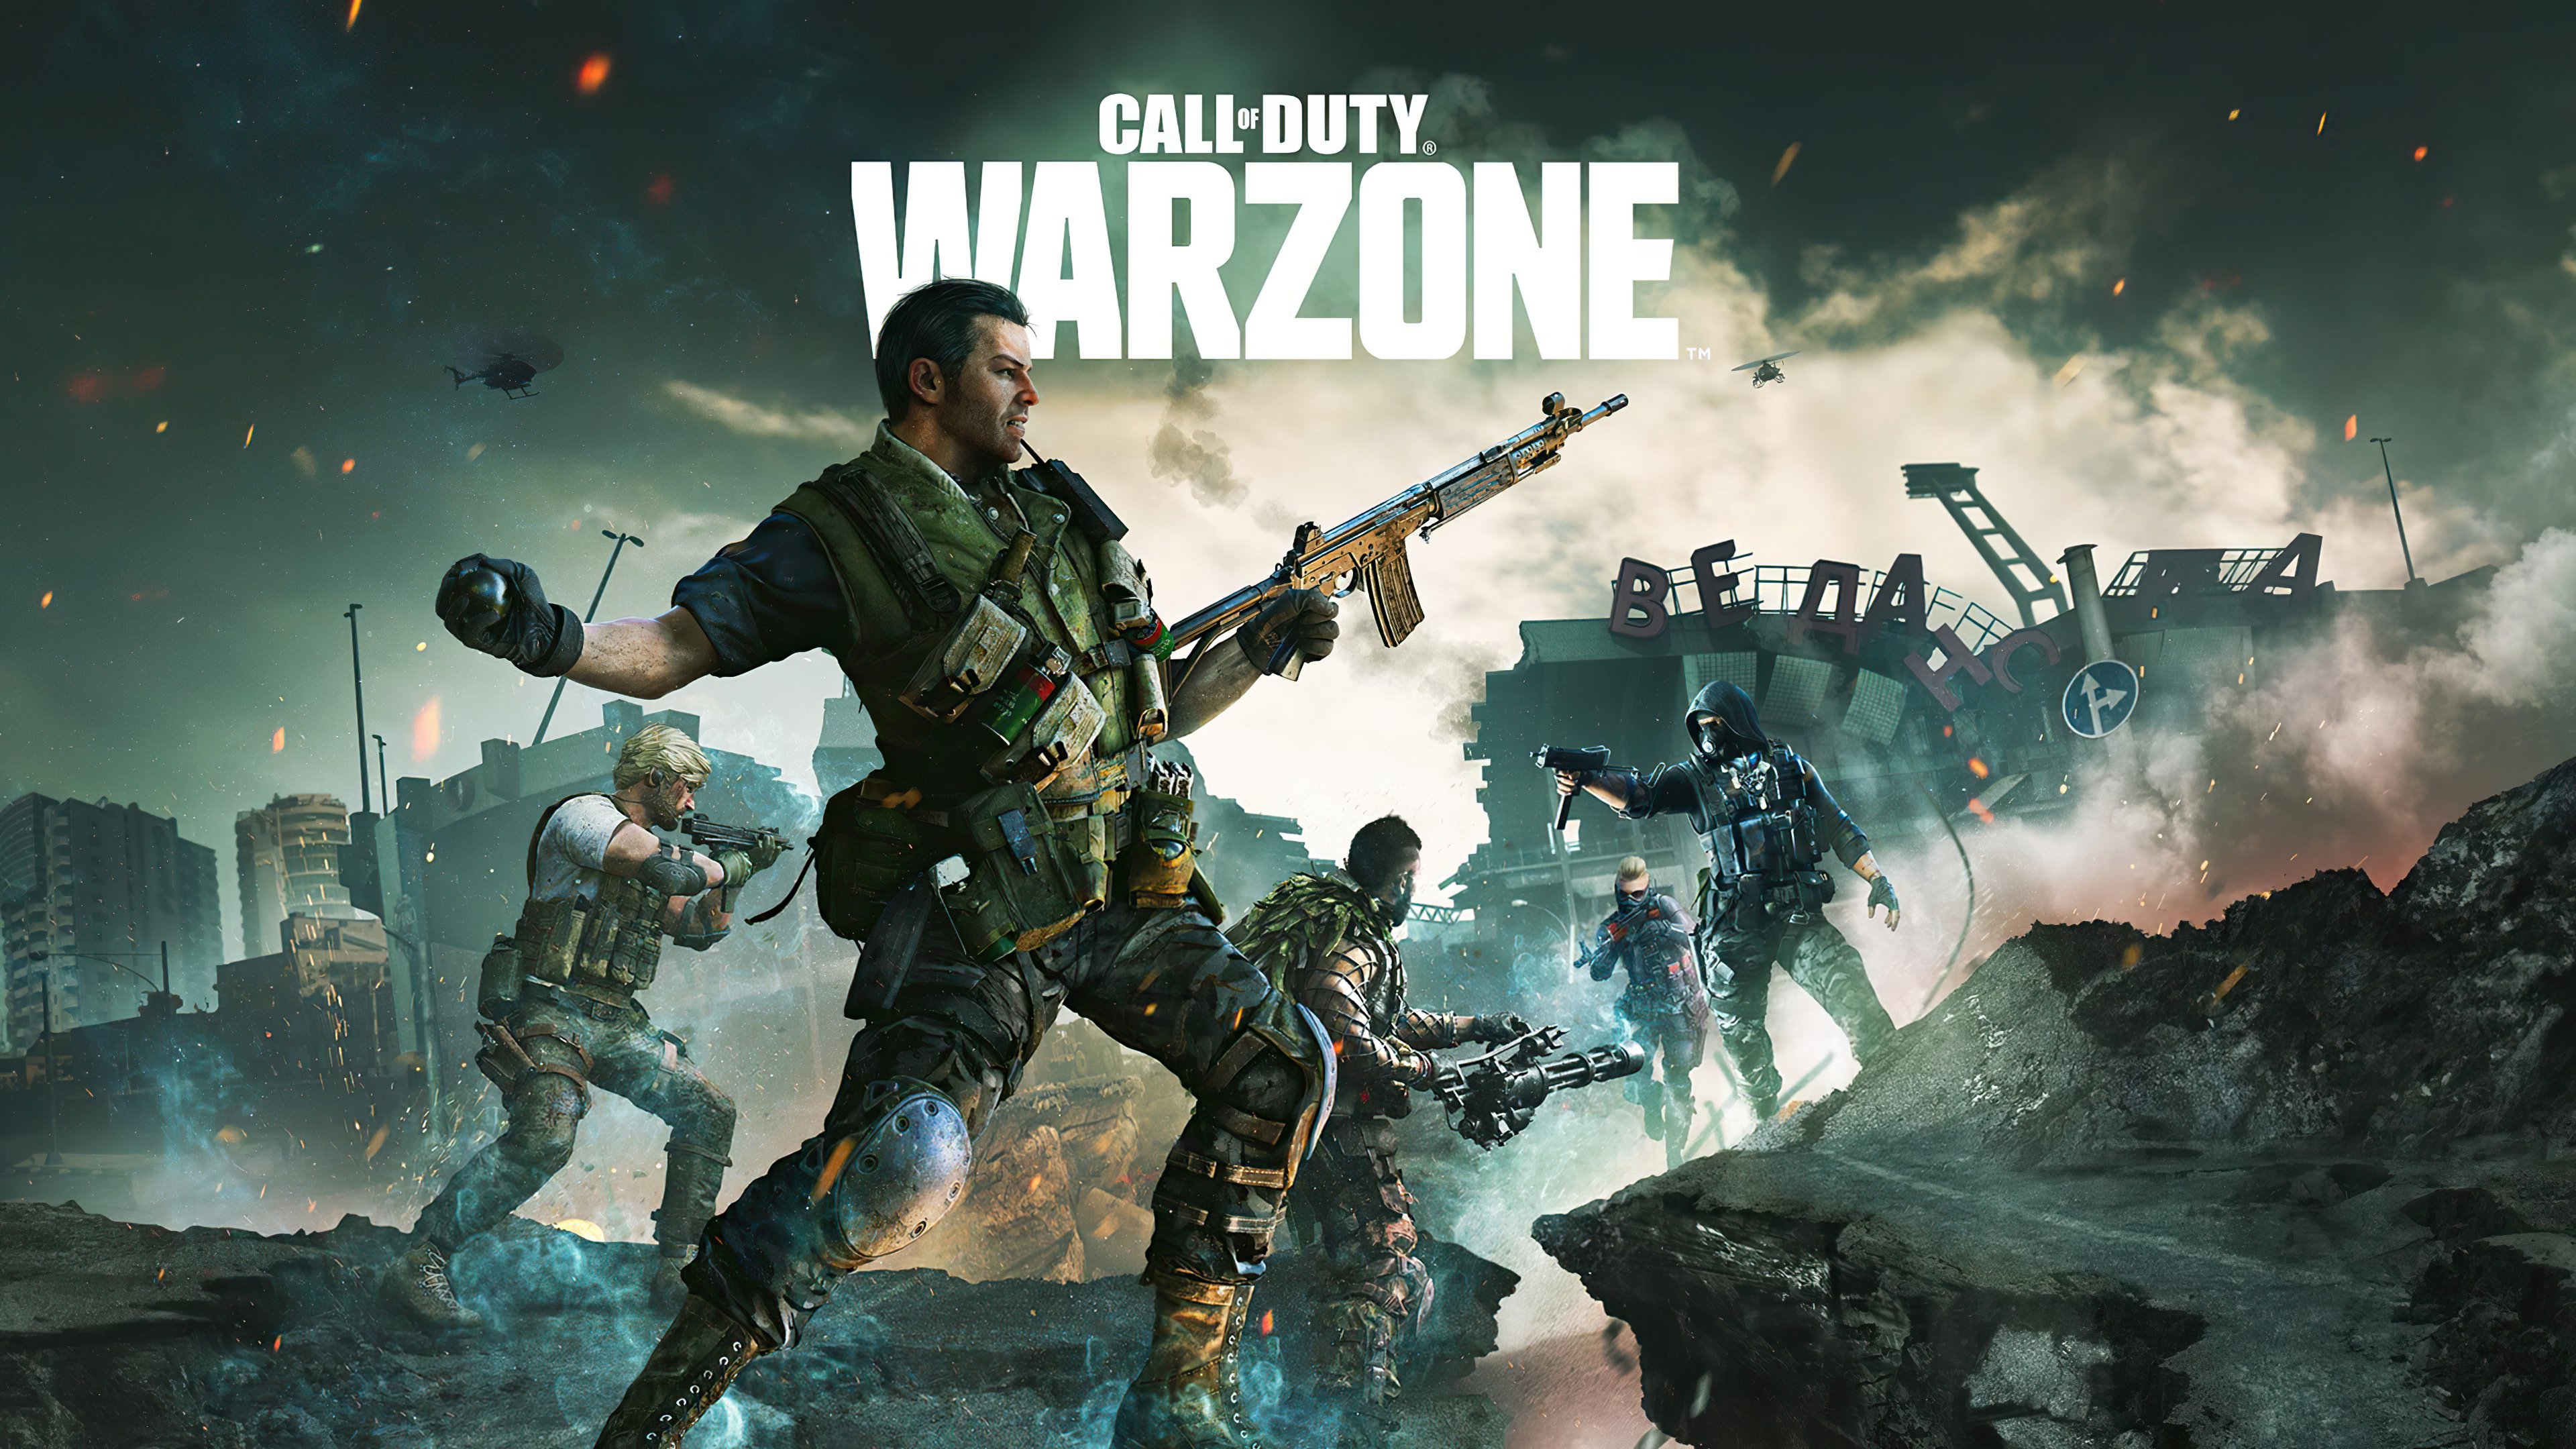 Duty Warzone 2021 Wallpaper 4k Ultra HD